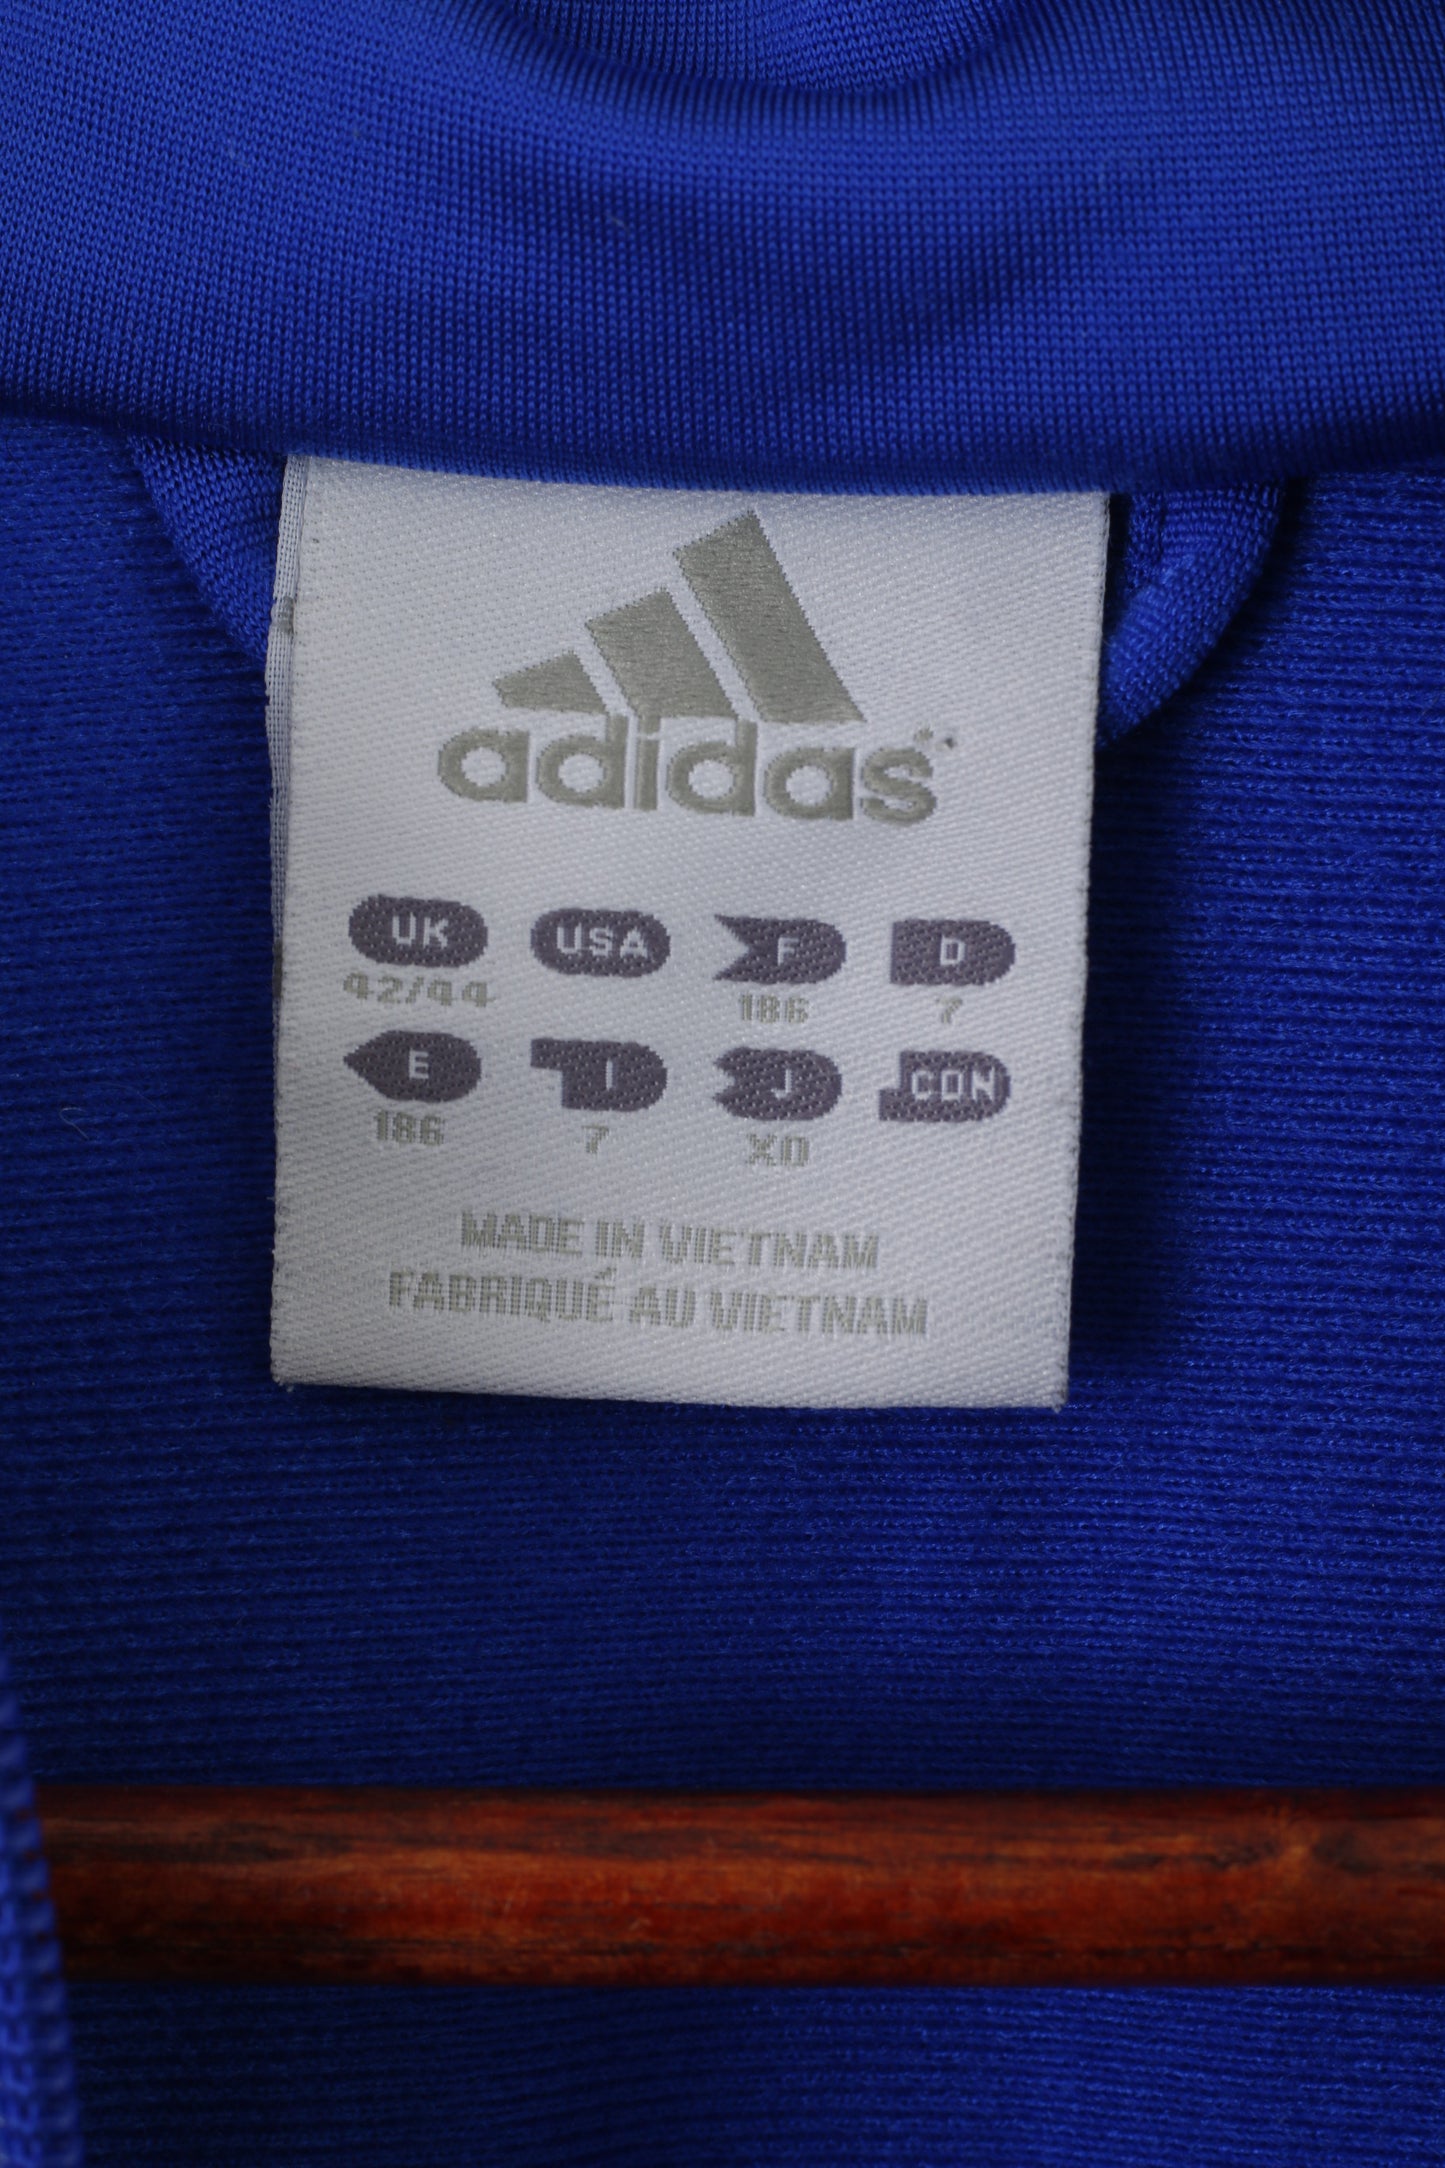 Felpa Adidas da uomo 42/44 L blu lucido vintage con cerniera intera sportiva da allenamento